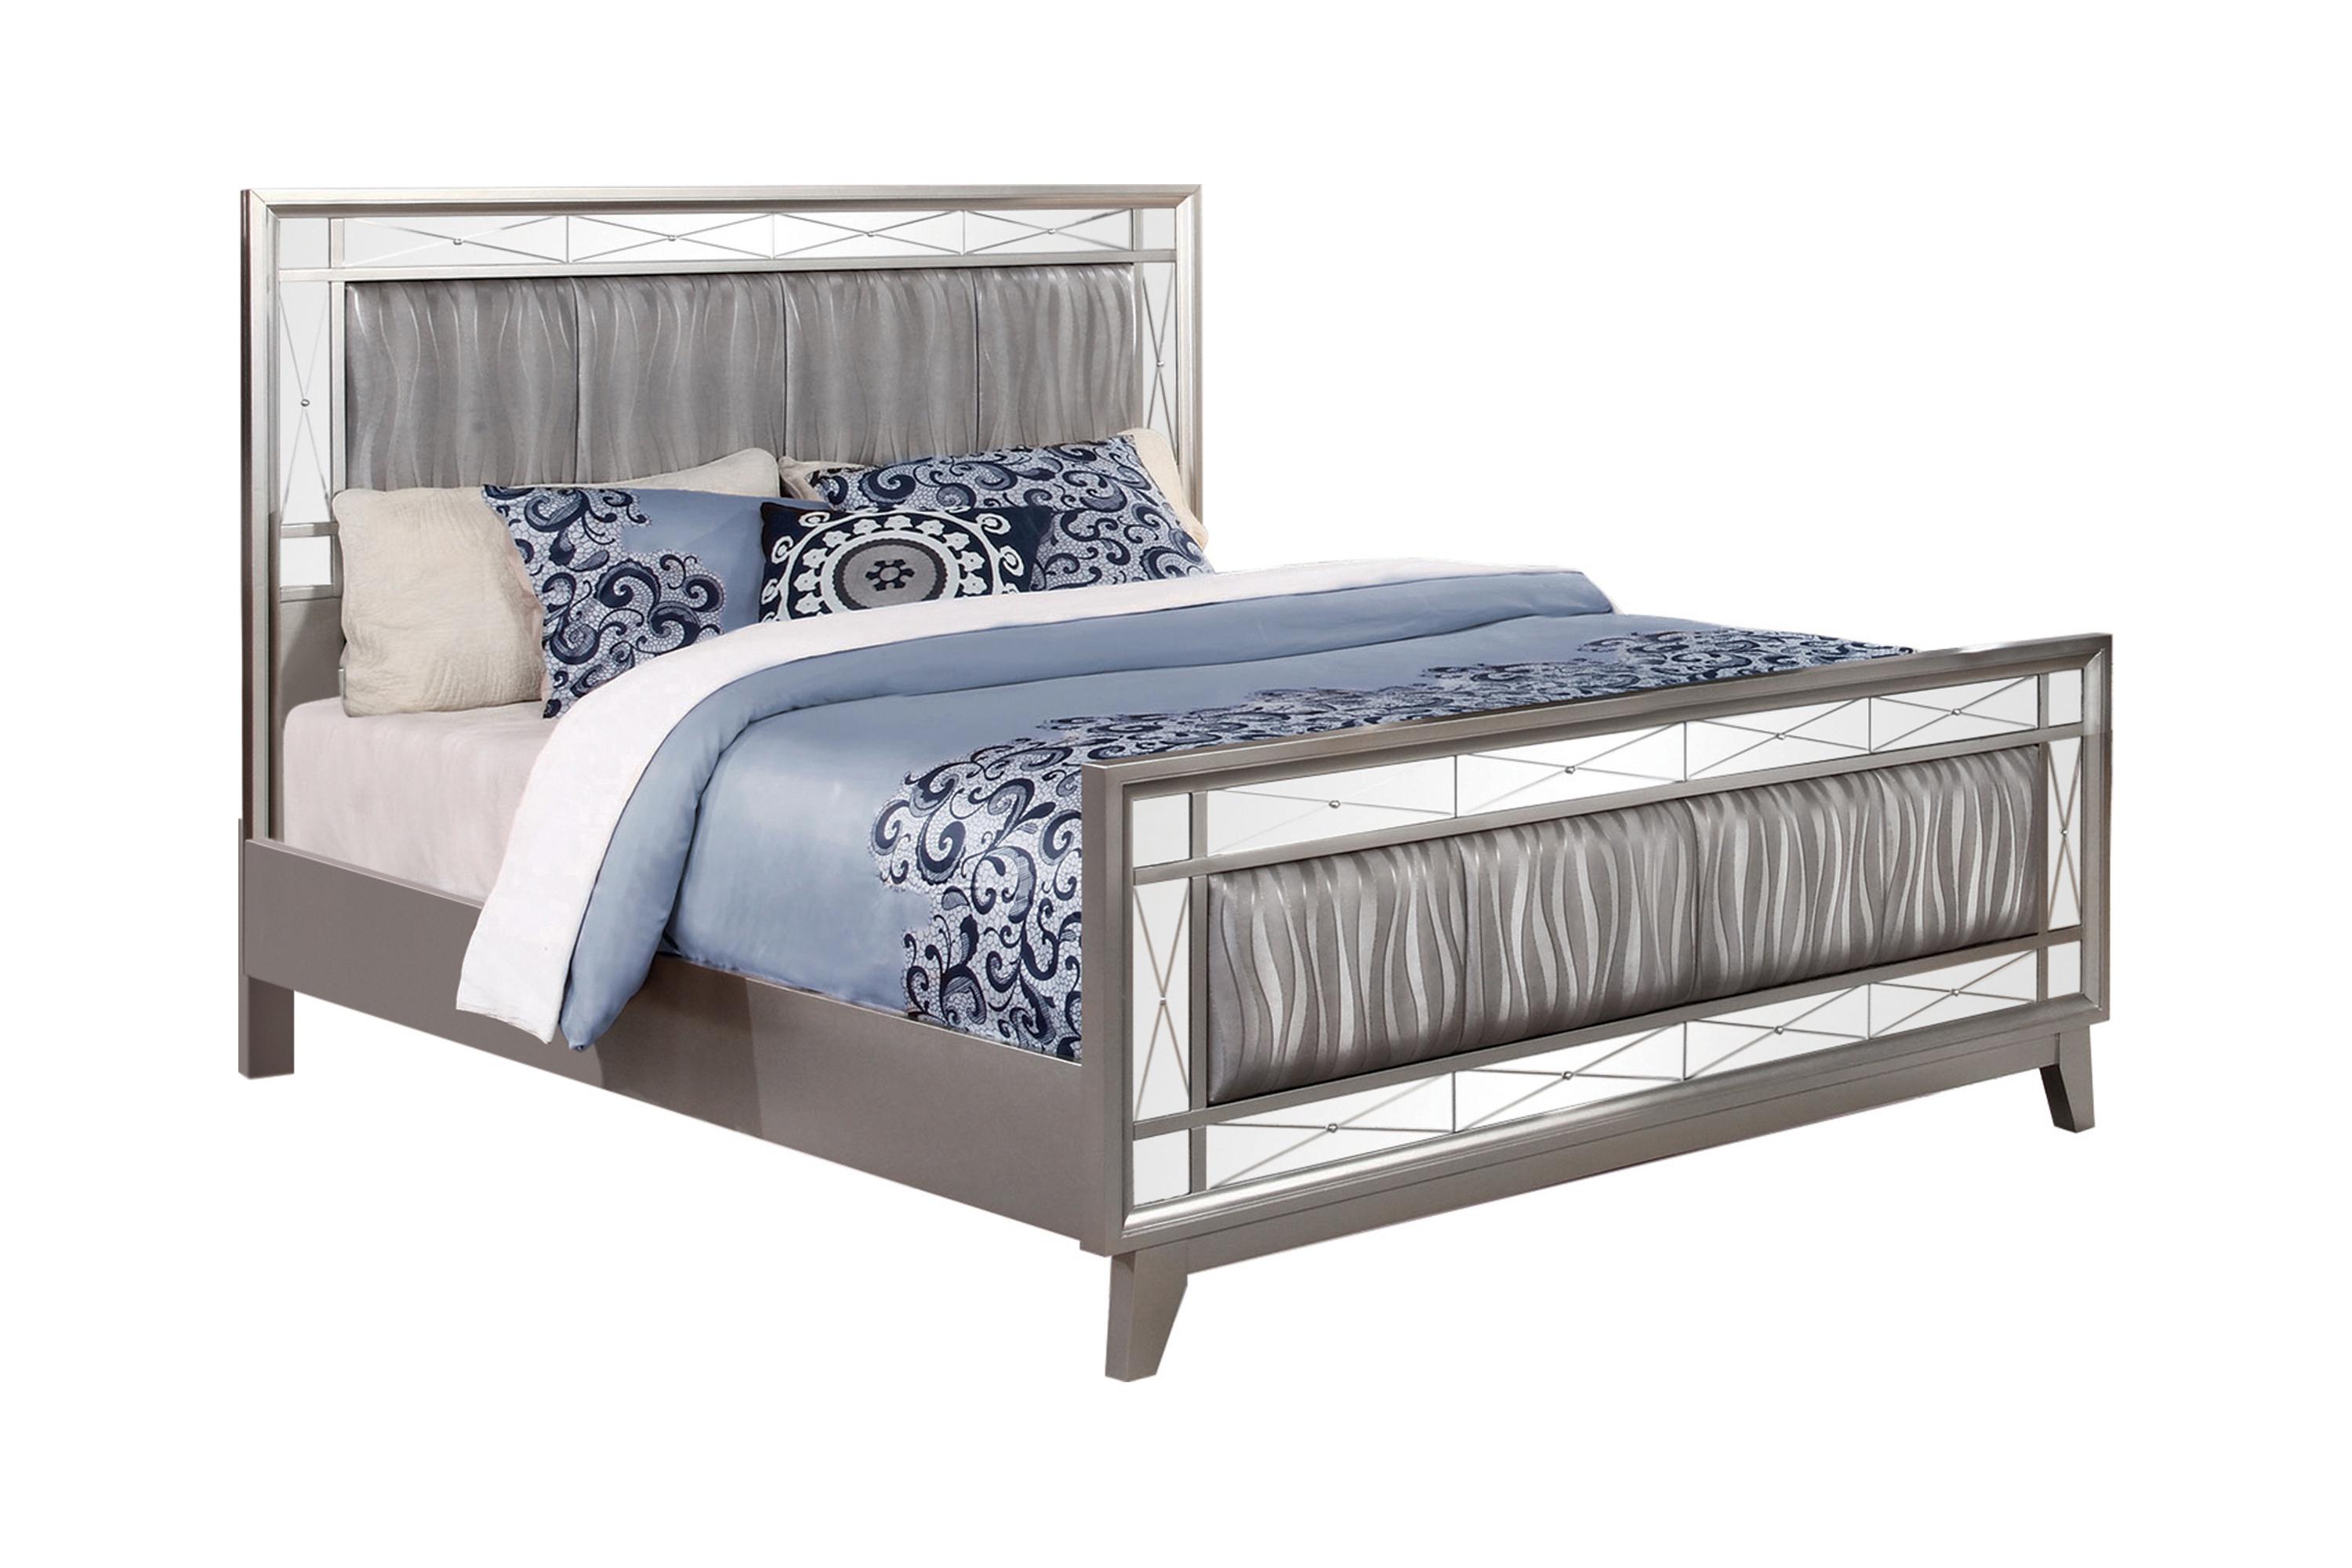 

    
Glam Metallic Mercury Solid Wood Full Bedroom Set 6pcs Coaster 204921F Leighton
